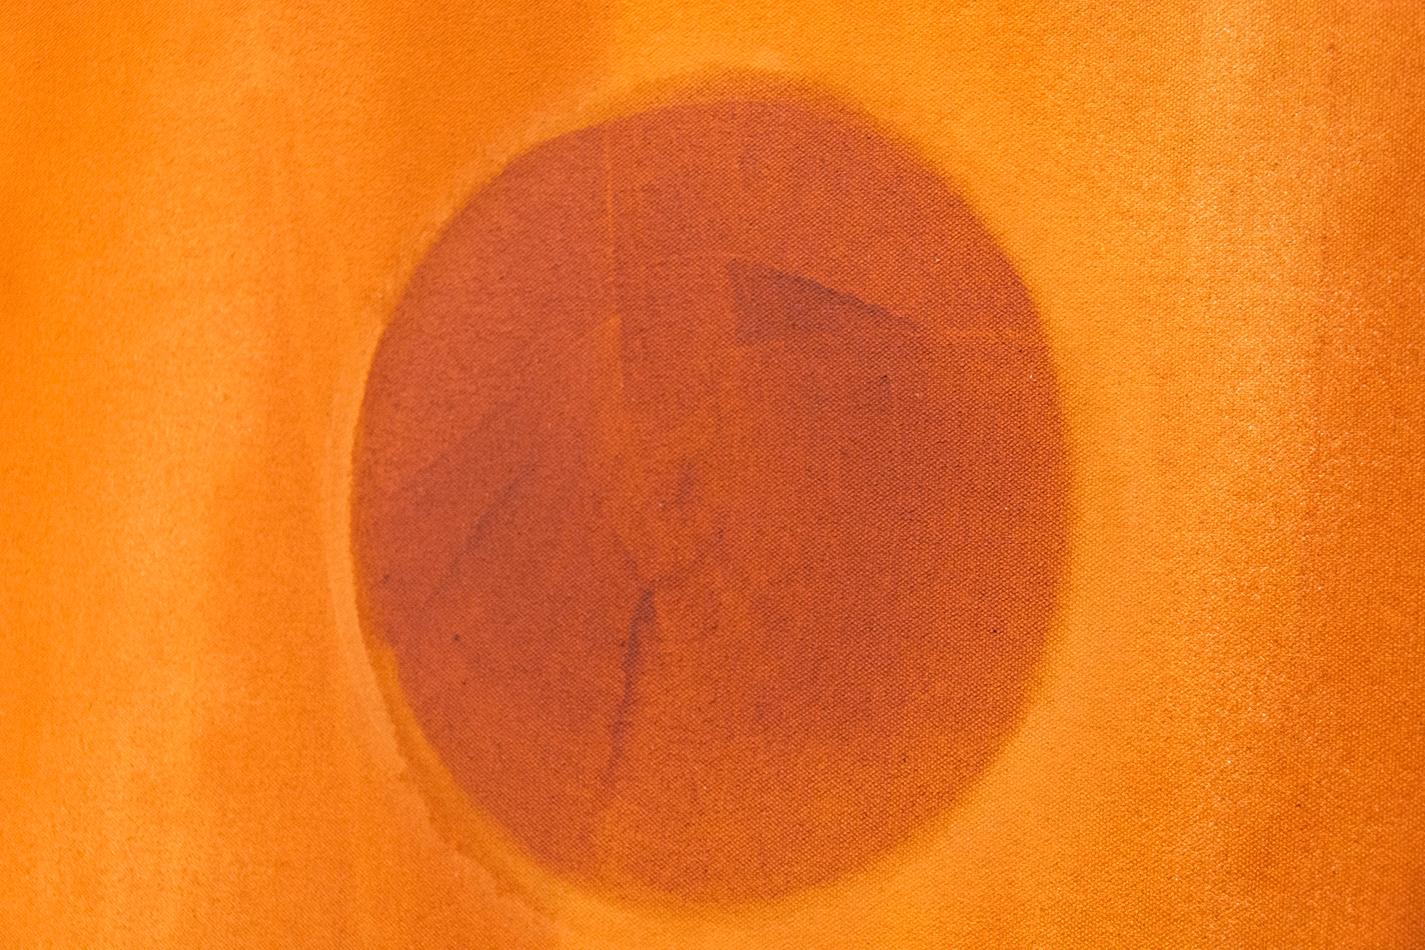 Mott Continuum - große, helle, orangefarbene, geometrische Abstraktion, Acryl auf Leinwand (Orange), Abstract Painting, von Milly Ristvedt